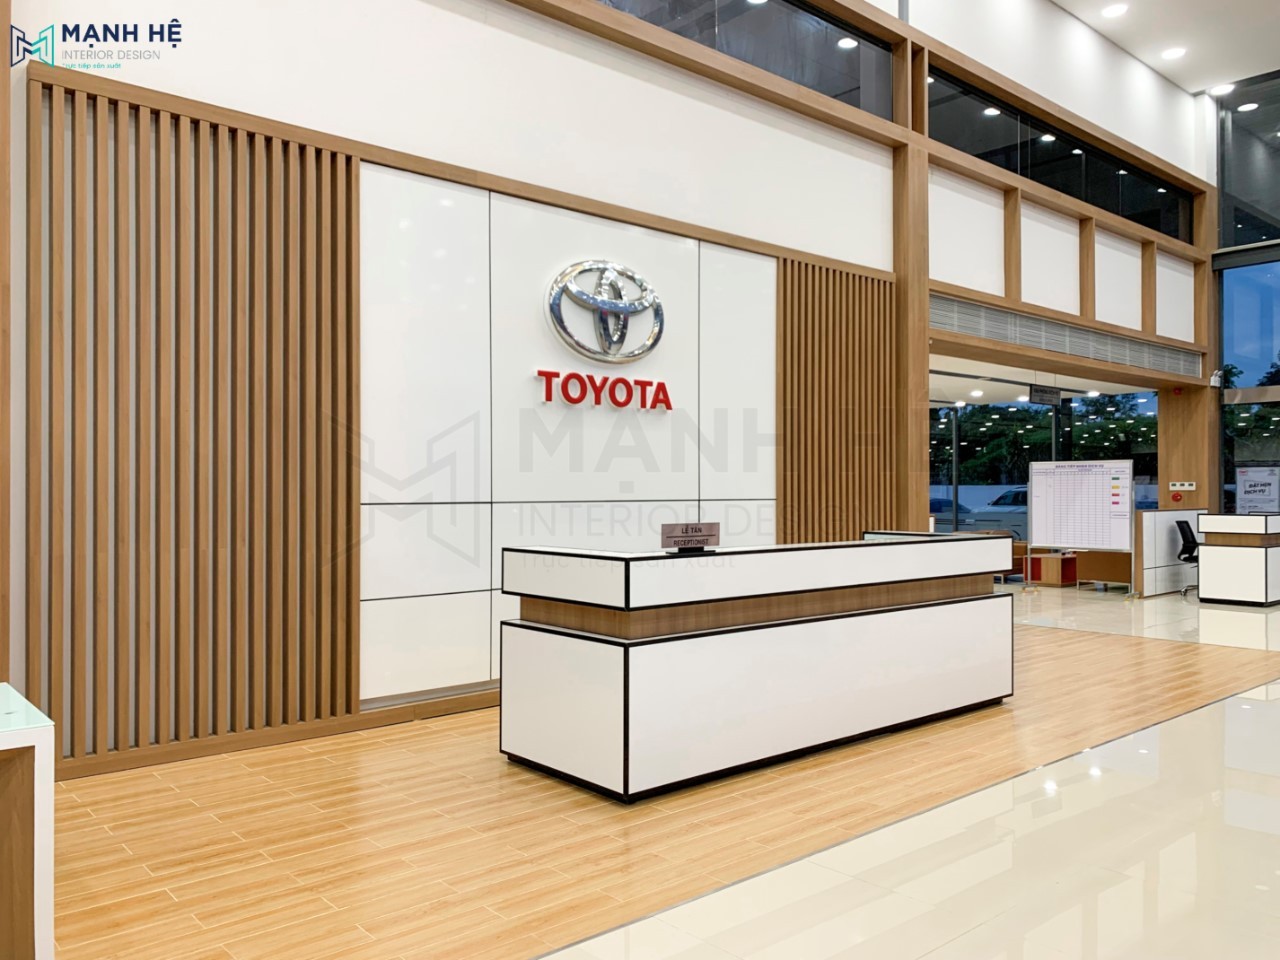 Thi công nội thất văn phòng showroom Toyota Bình Phước